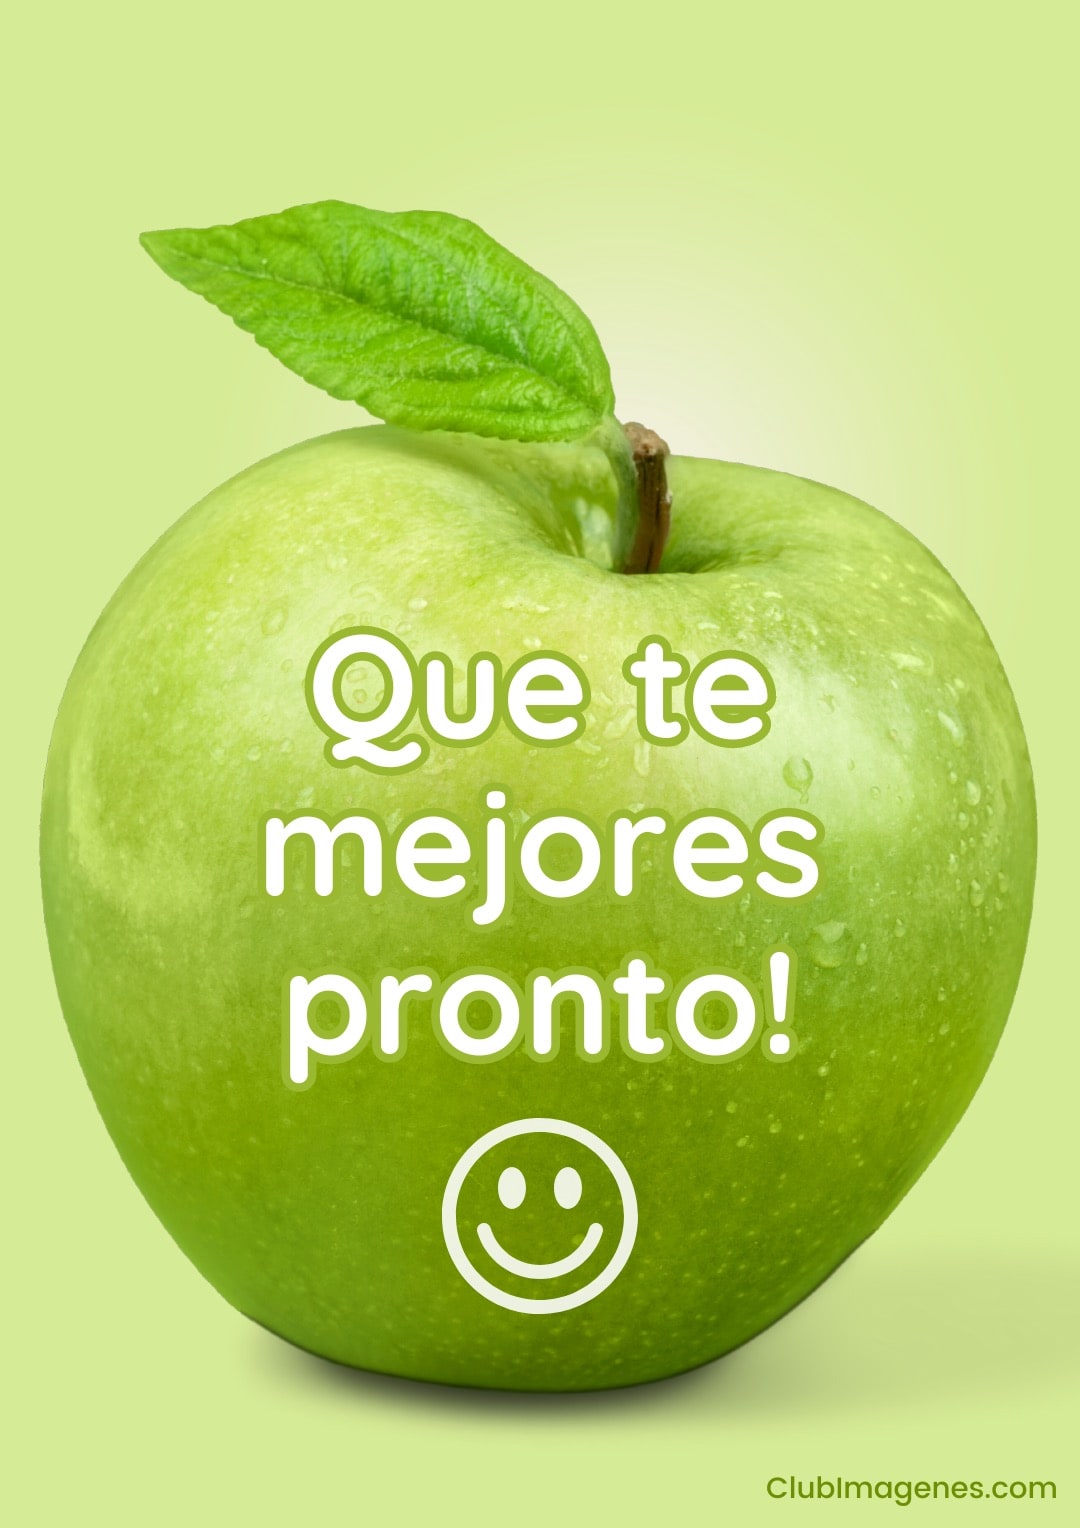 Manzana verde con gotas de agua y texto 'Que te mejores pronto' con una carita feliz